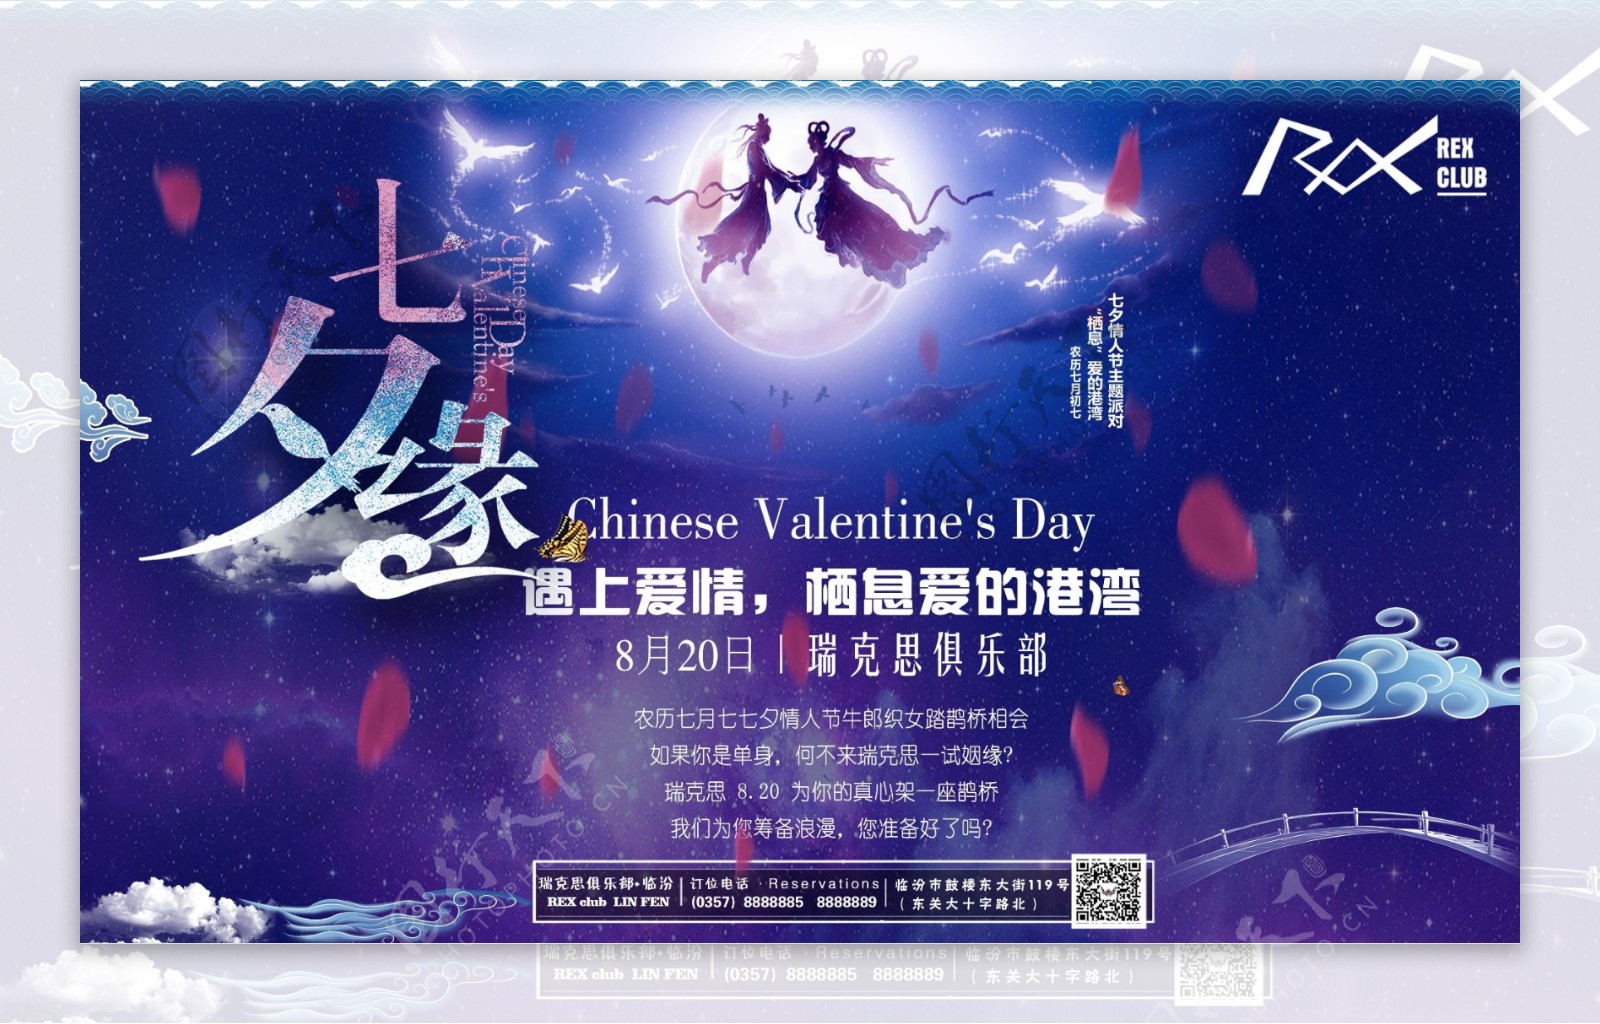 酒吧七夕情人节主题派对海报喷绘图片